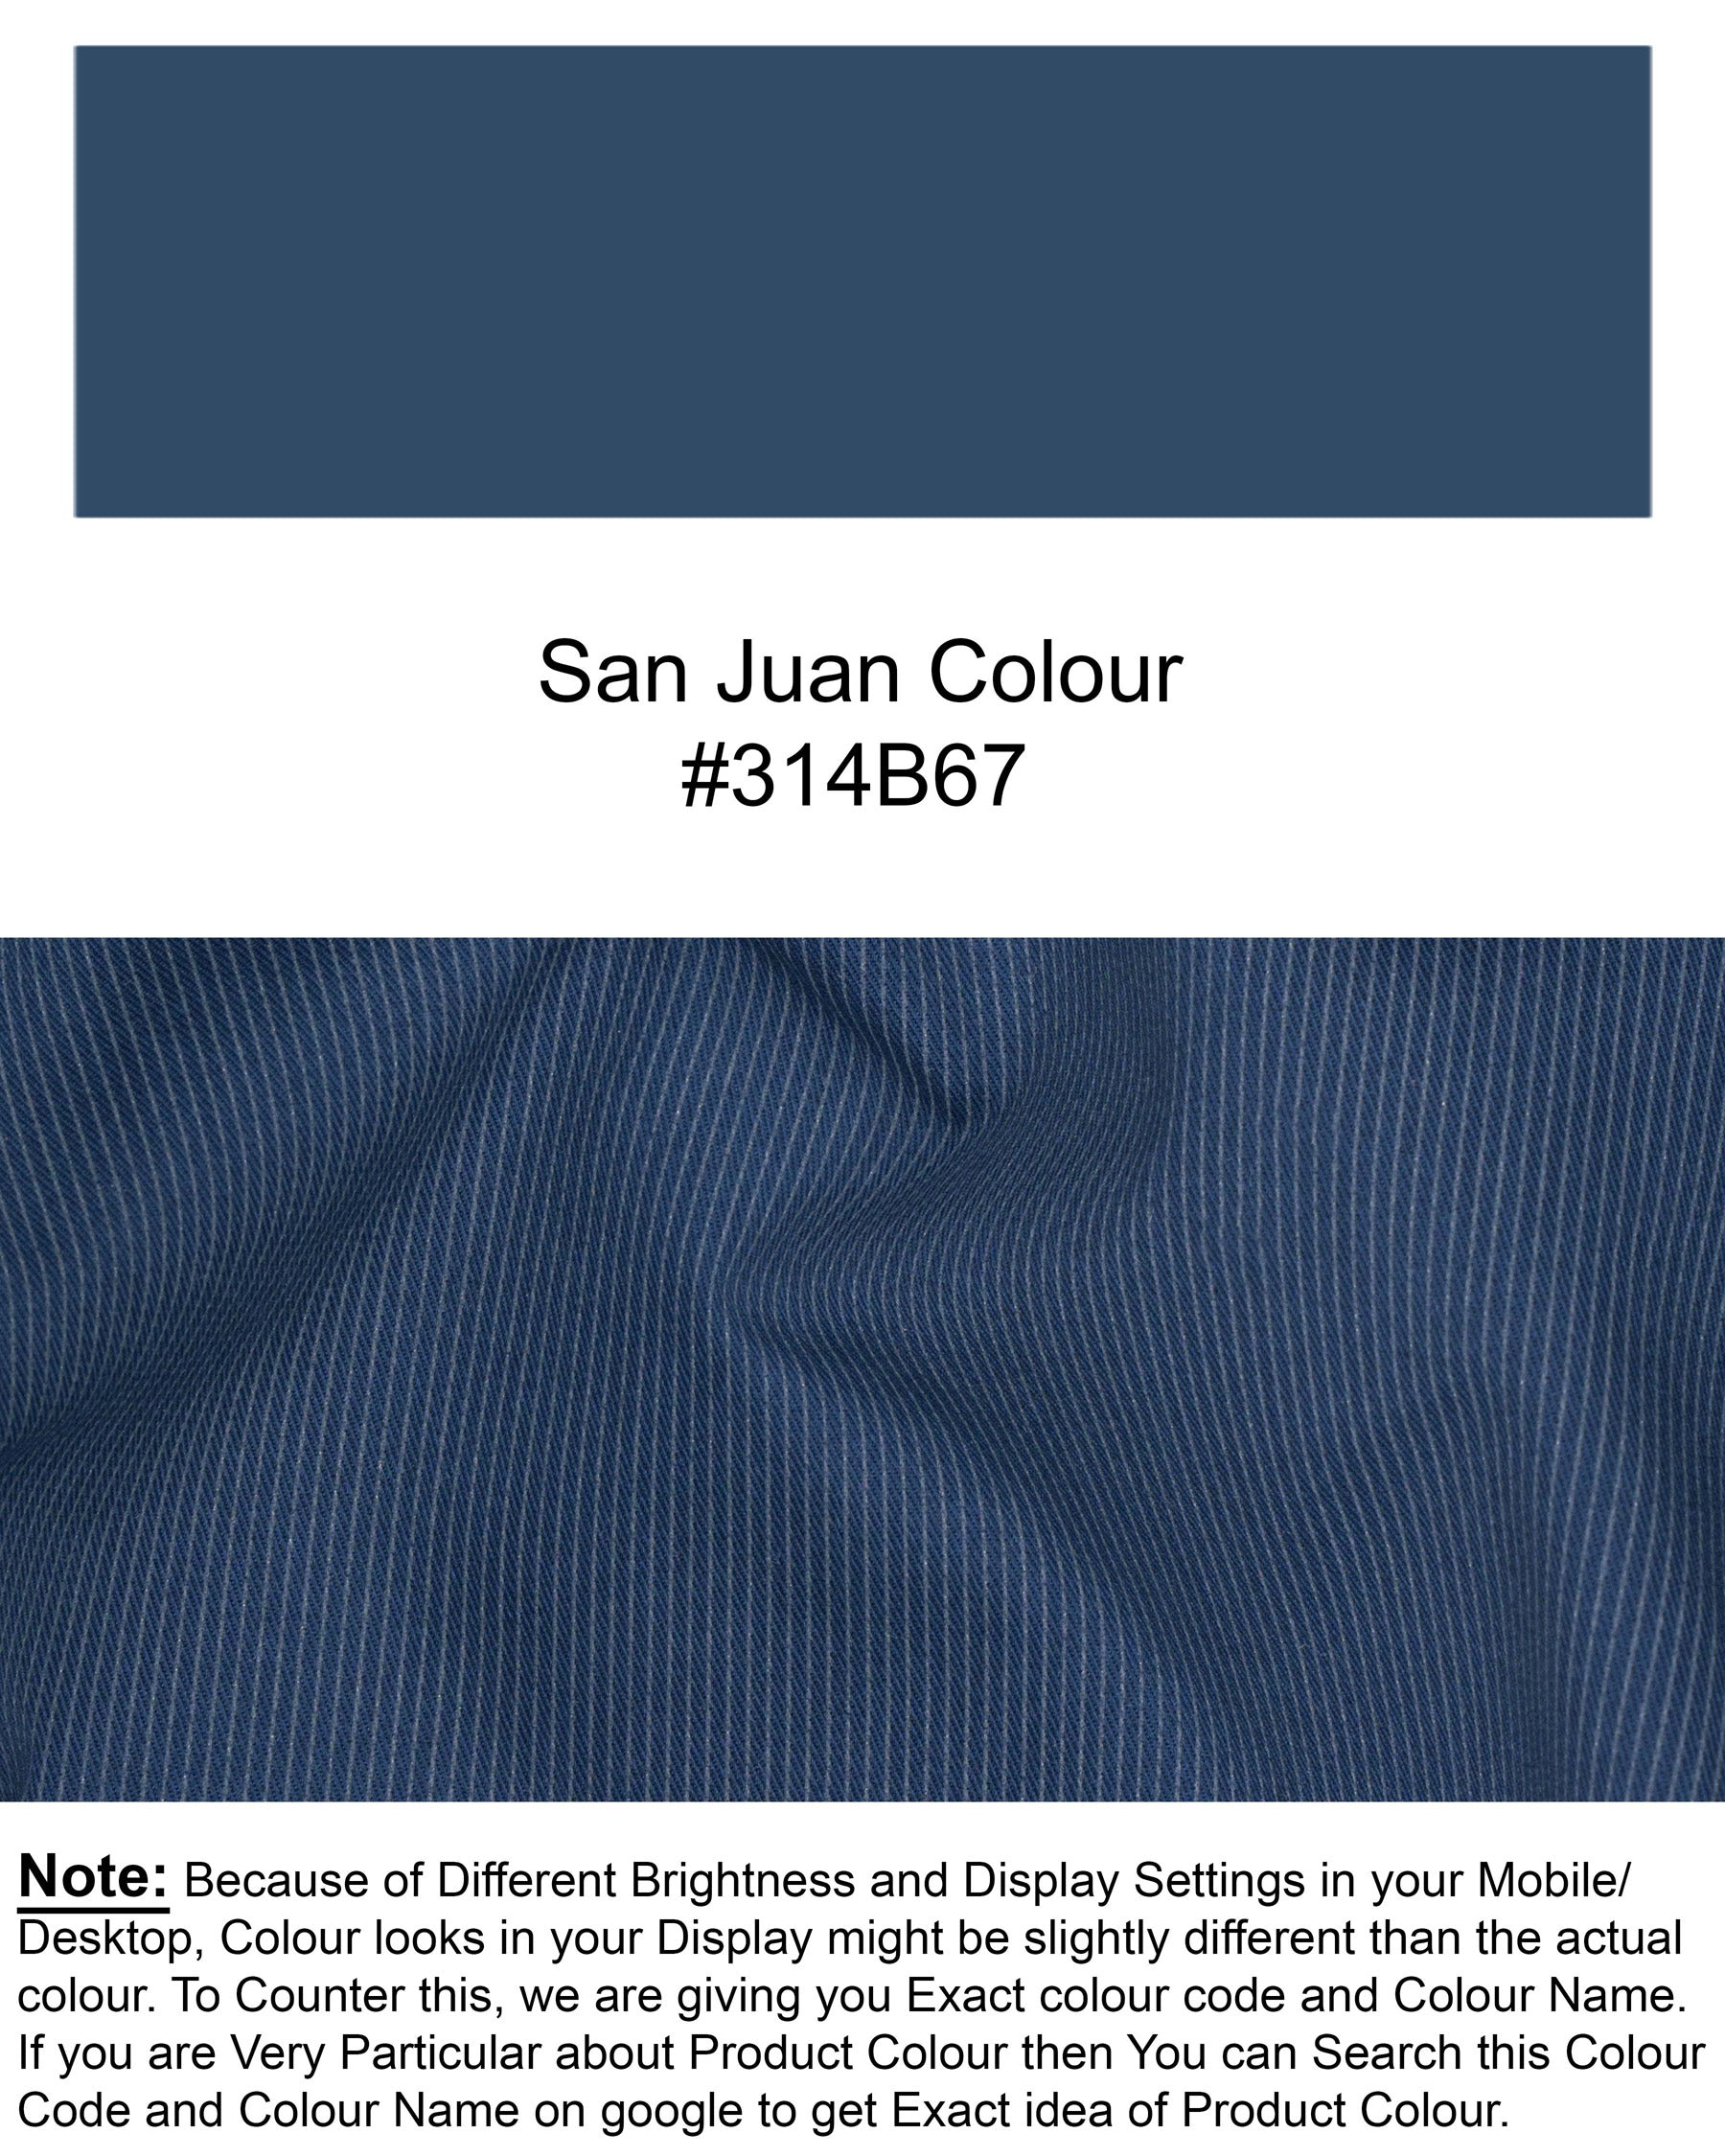 San Juan Blue Subtle Blriped Premium Cotton Sports Blazer BL1569-SB-PP-36, BL1569-SB-PP-38, BL1569-SB-PP-40, BL1569-SB-PP-42, BL1569-SB-PP-44, BL1569-SB-PP-46, BL1569-SB-PP-48, BL1569-SB-PP-50, BL1569-SB-PP-52, BL1569-SB-PP-54, BL1569-SB-PP-56, BL1569-SB-PP-58, BL1569-SB-PP-60